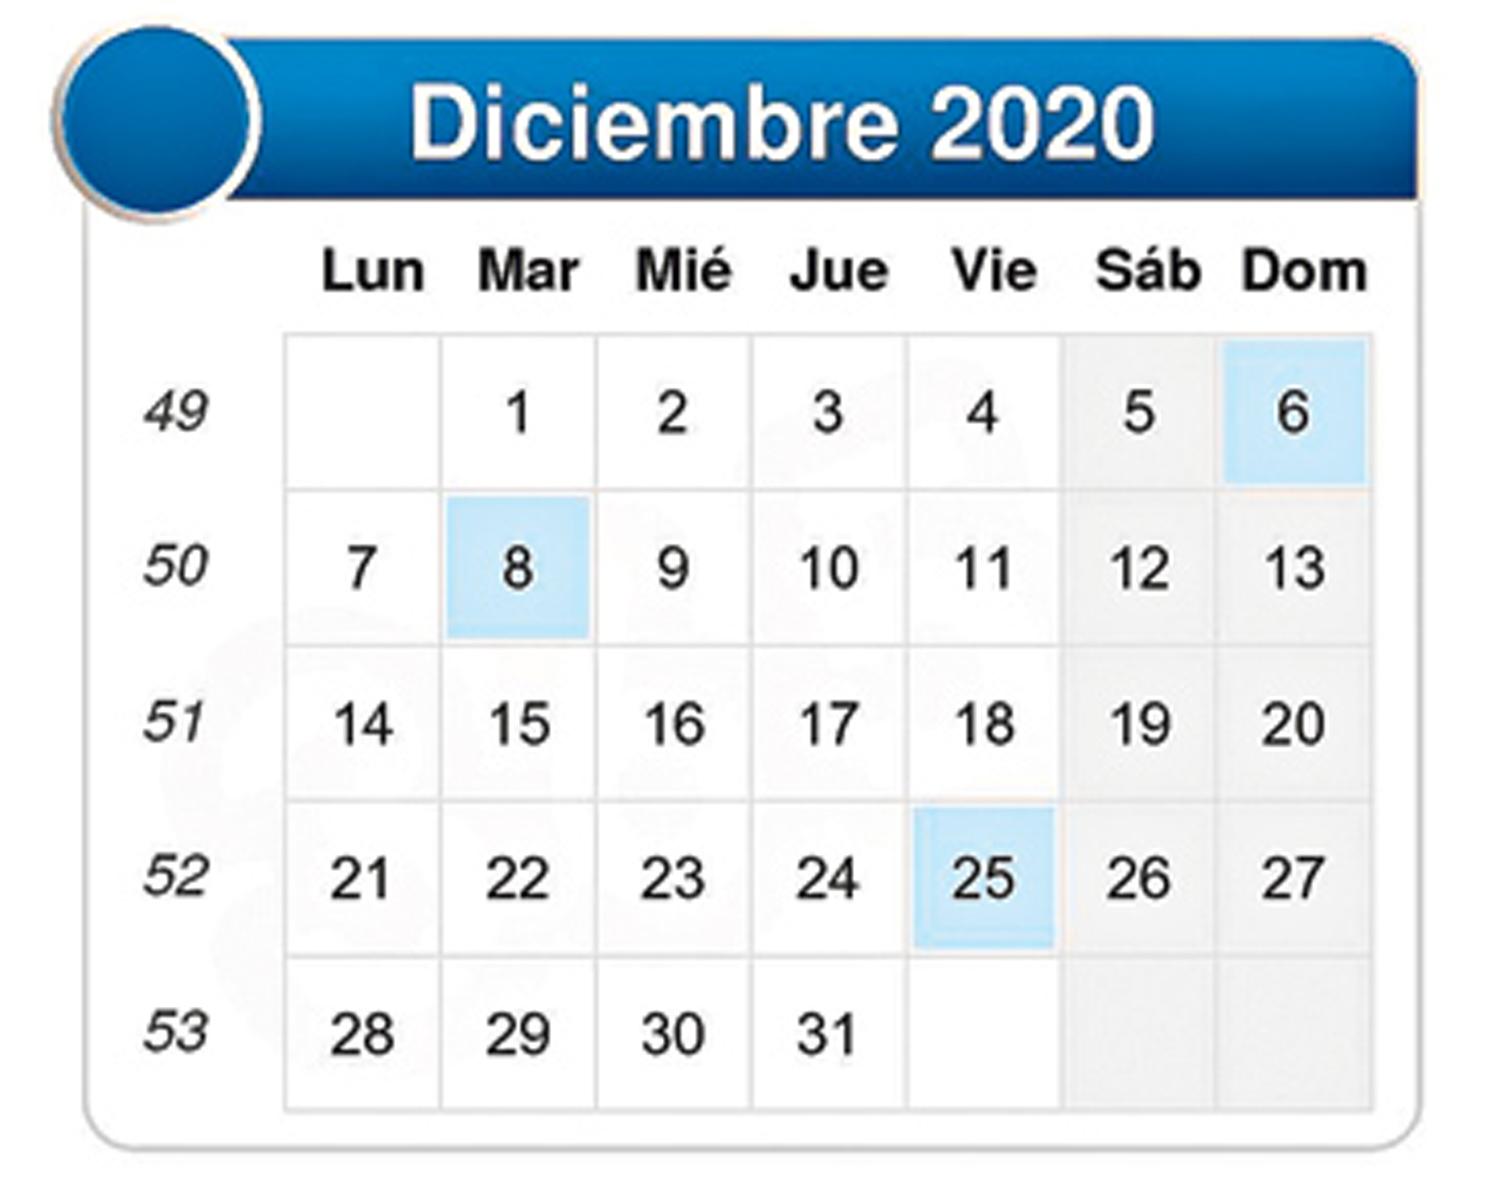 DICIEMBRE. El calendario del Seleccionado de rugby tucumano.